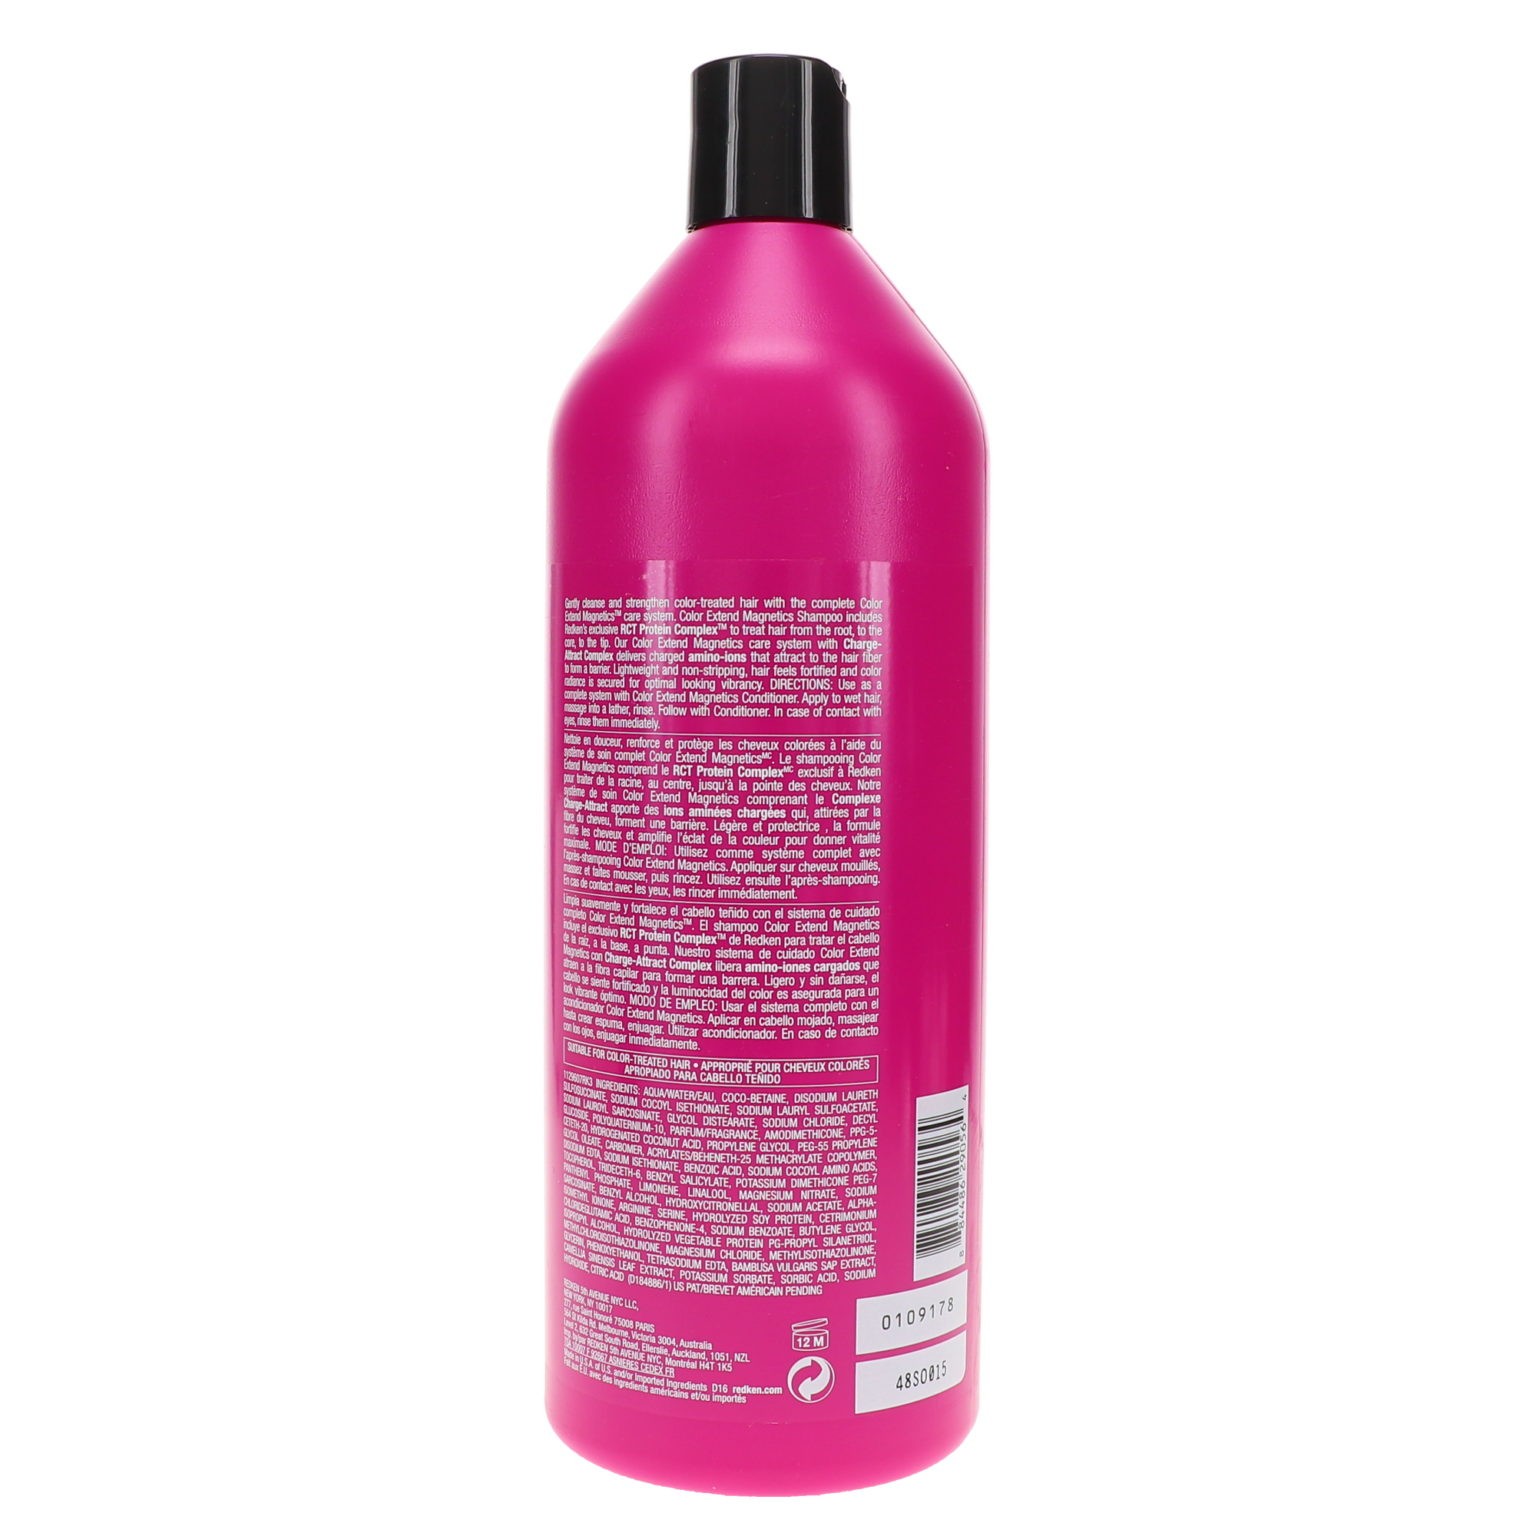 Redken Color Extend Shampoo 33.8 oz Beauty